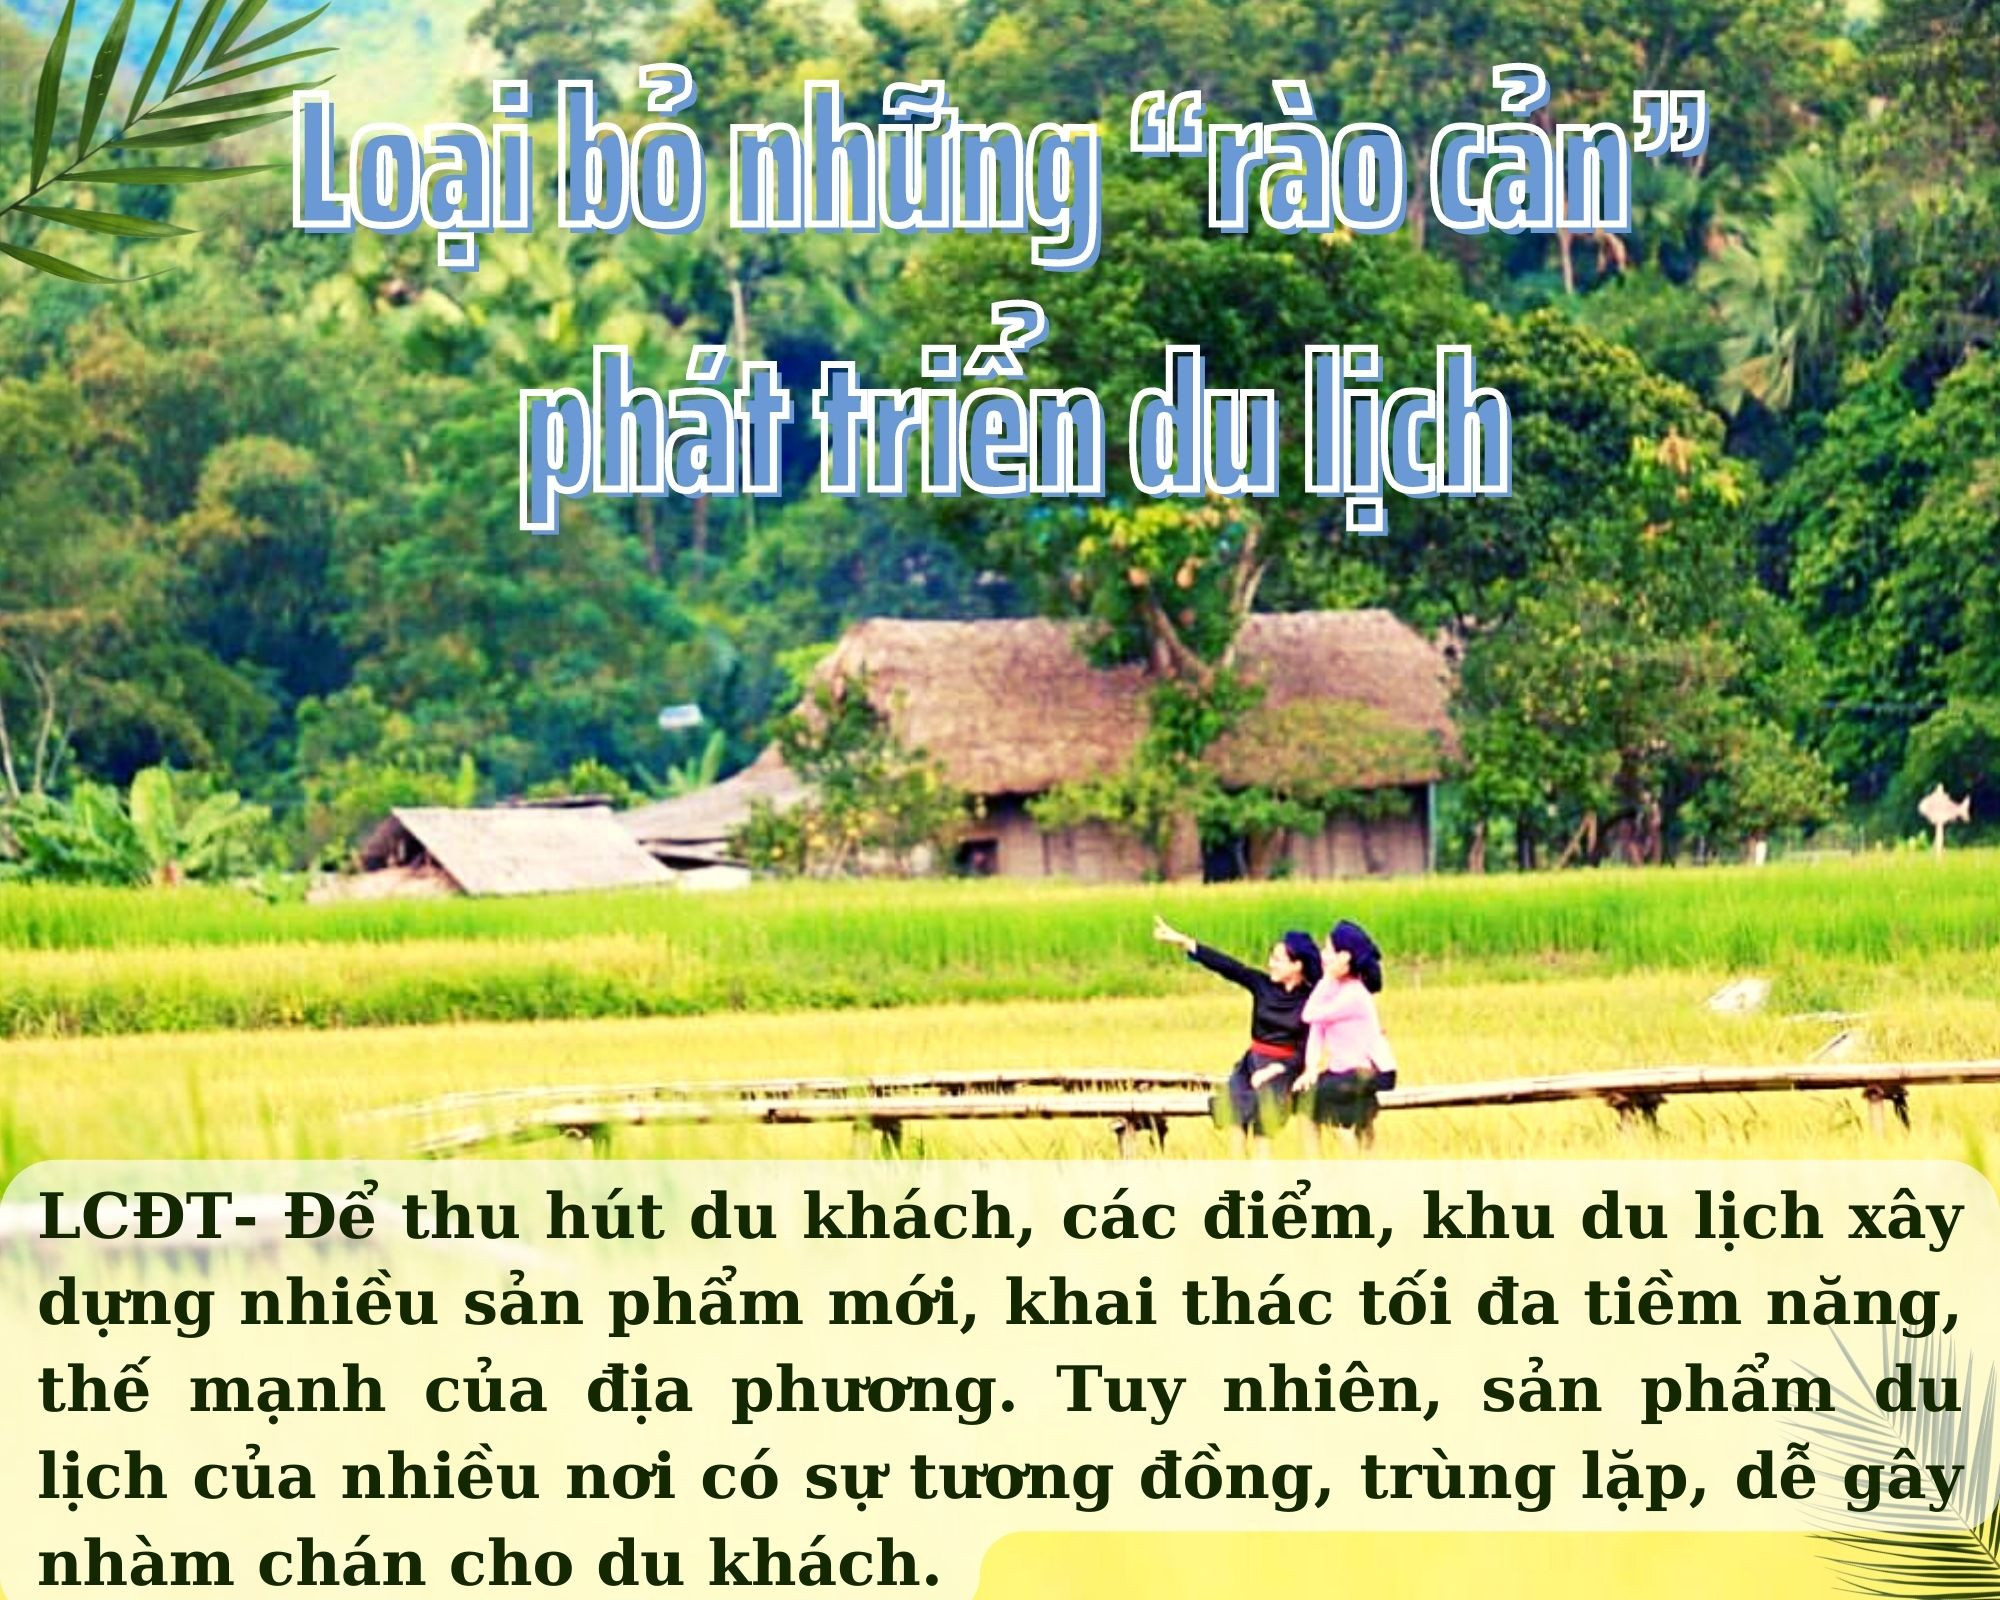 Lào Cai: Loại bỏ những “rào cản” phát triển du lịch - Ảnh 1.